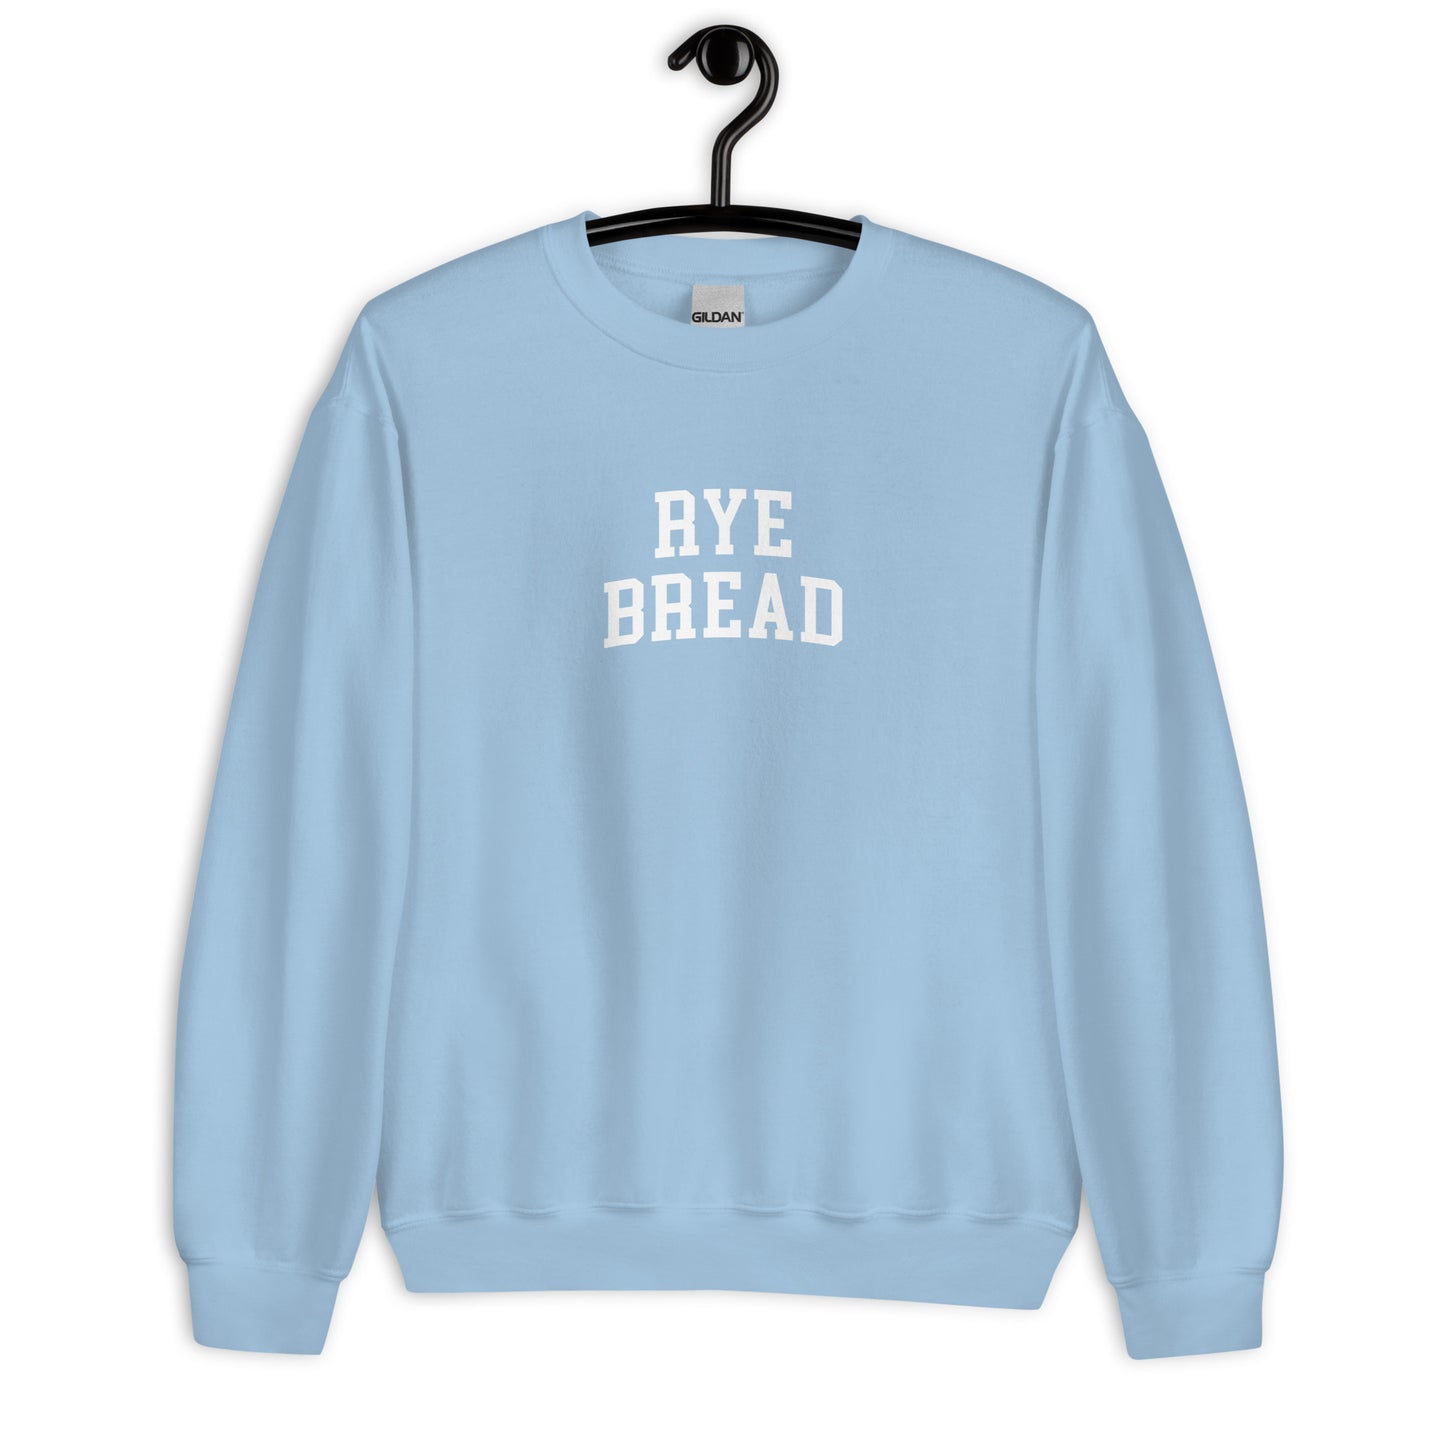 Rye Bread Sweatshirt - Arched Font